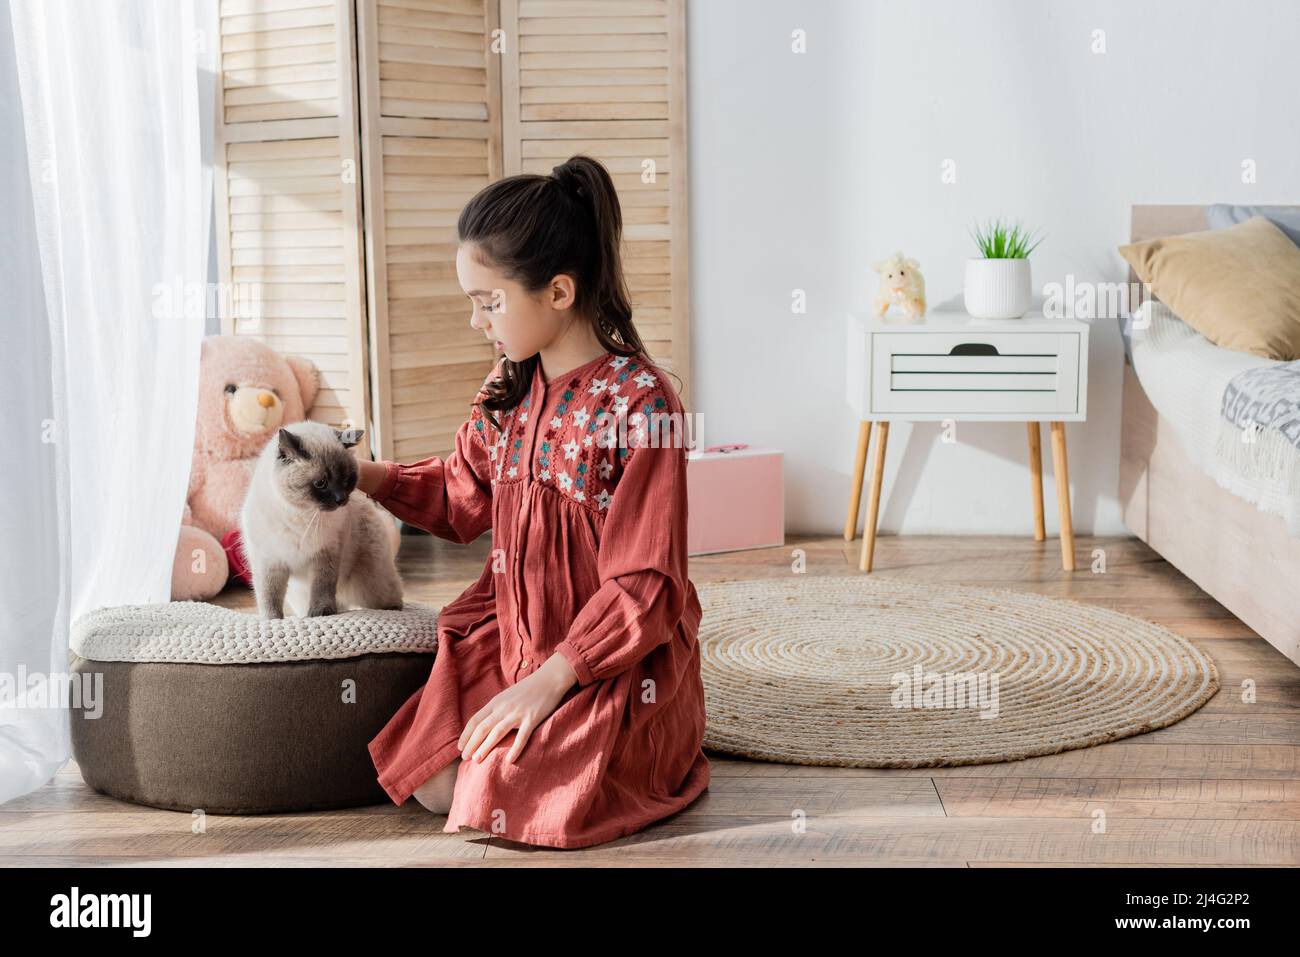 ragazza seduta sul pavimento e stroking gatto su morbido pouf in camera da letto Foto Stock